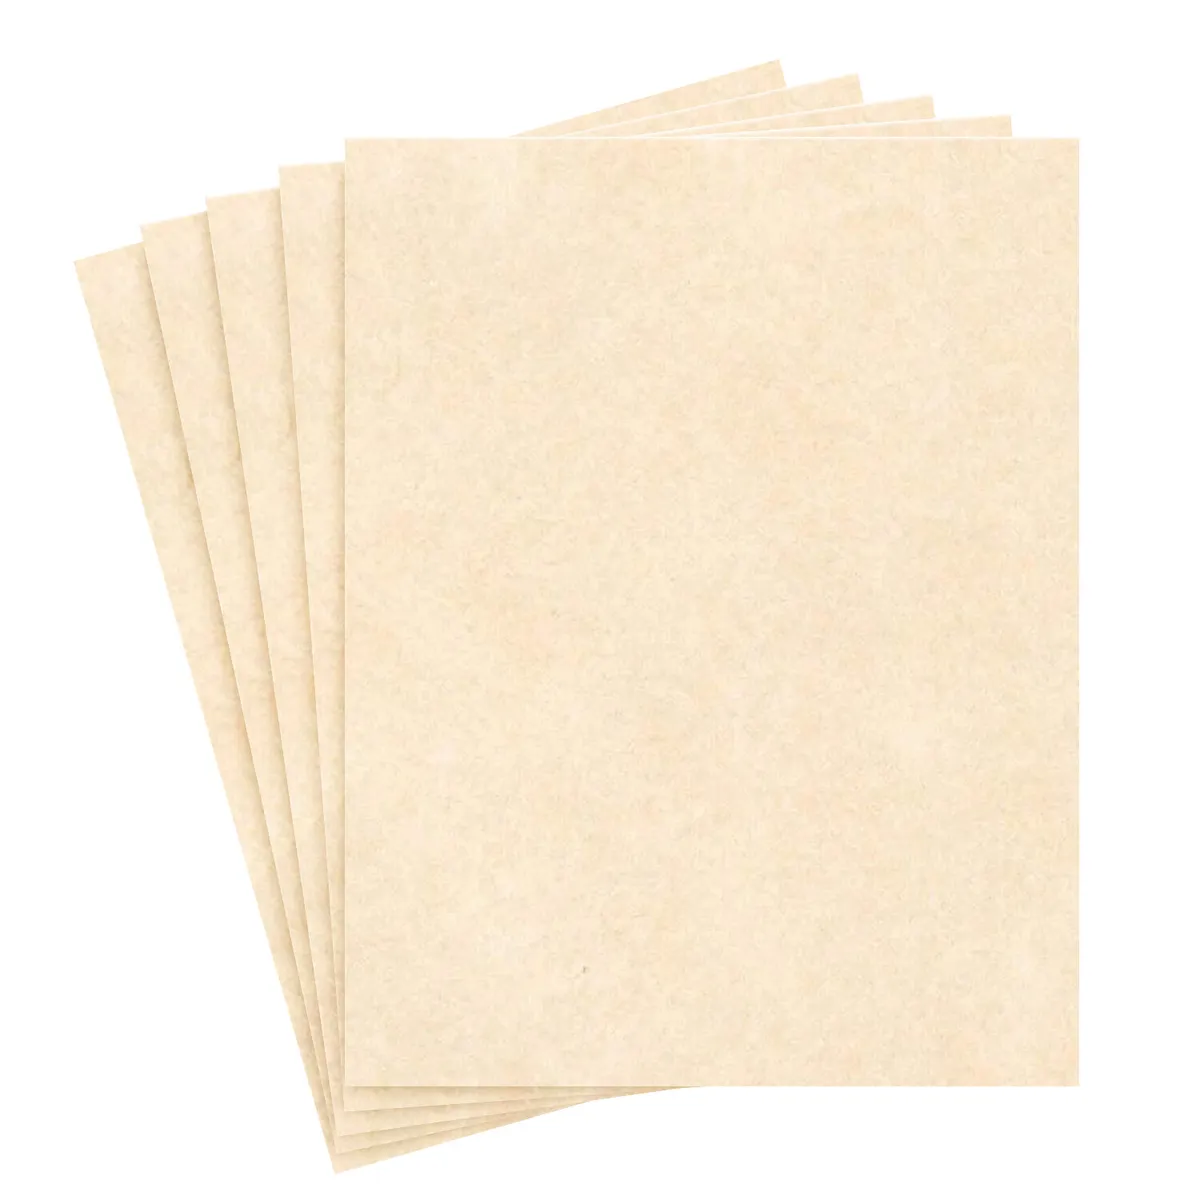 8.5 x 11 Natural Stationery Parchment Paper - 24lb Bond/60lb Text